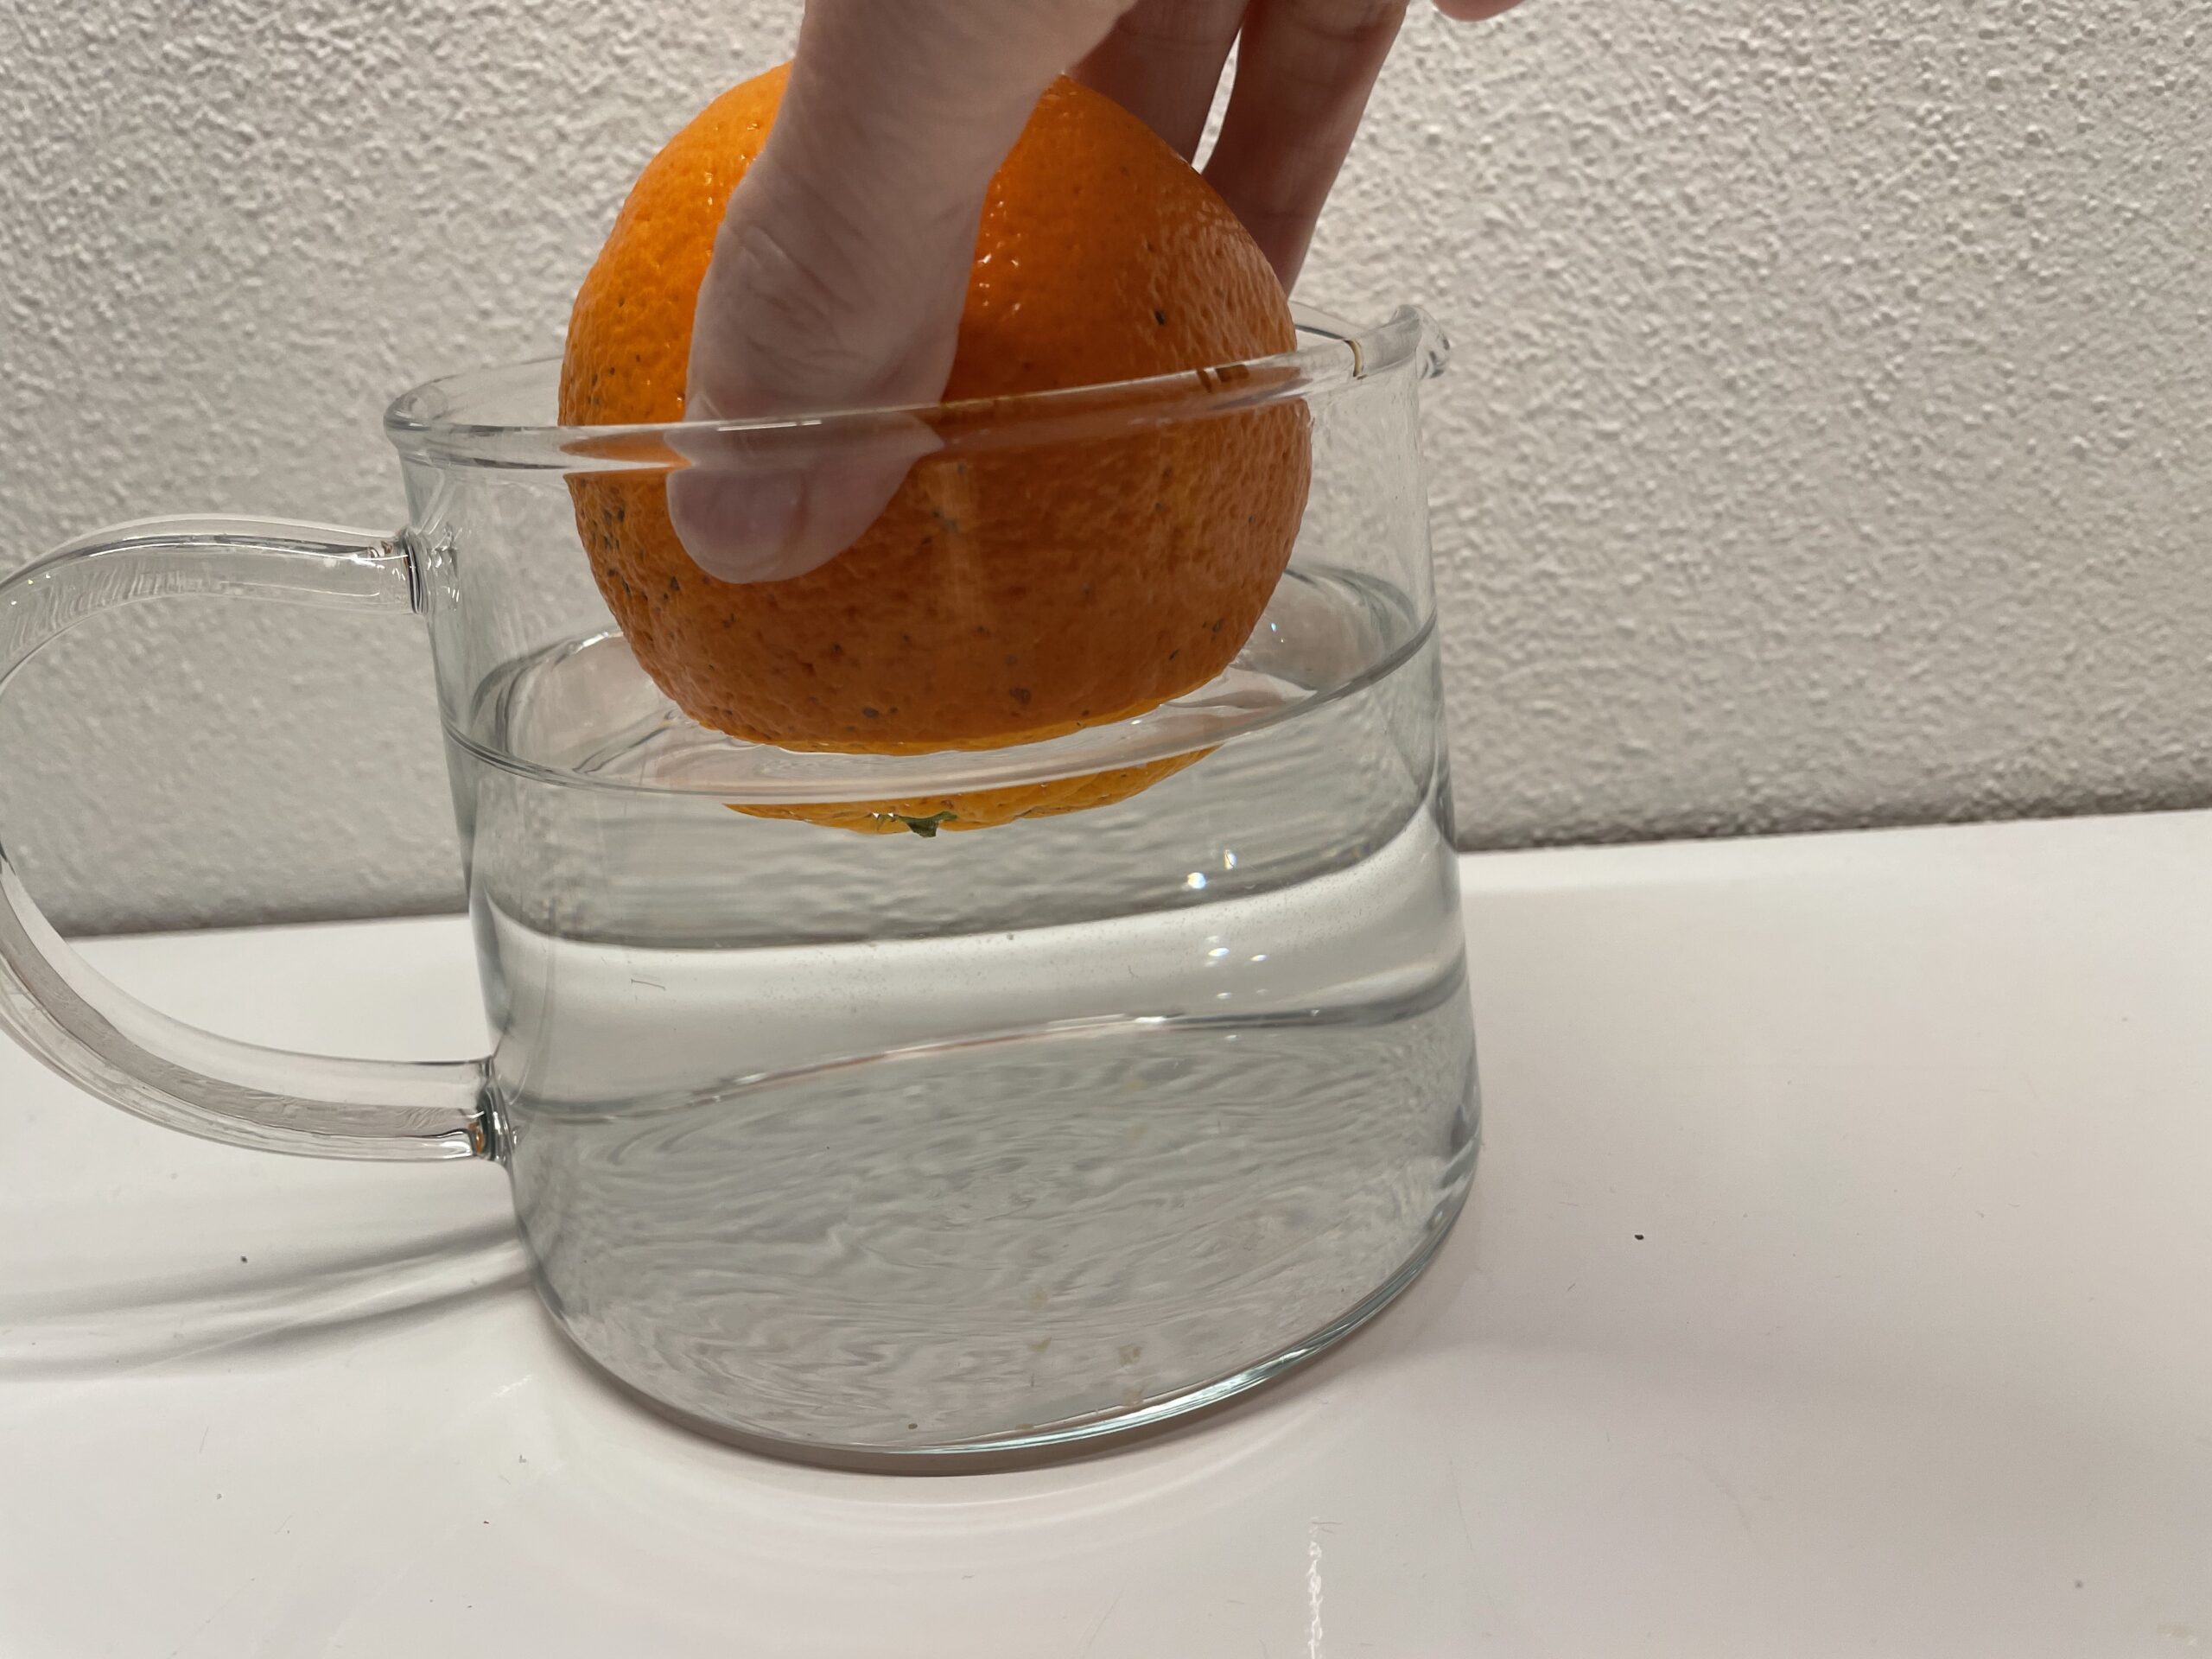 Bild zum Schritt 2 für das Bastel- und DIY-Abenteuer für Kinder: 'Jetzt legt ihr die Orange langsam ins Wasser.'